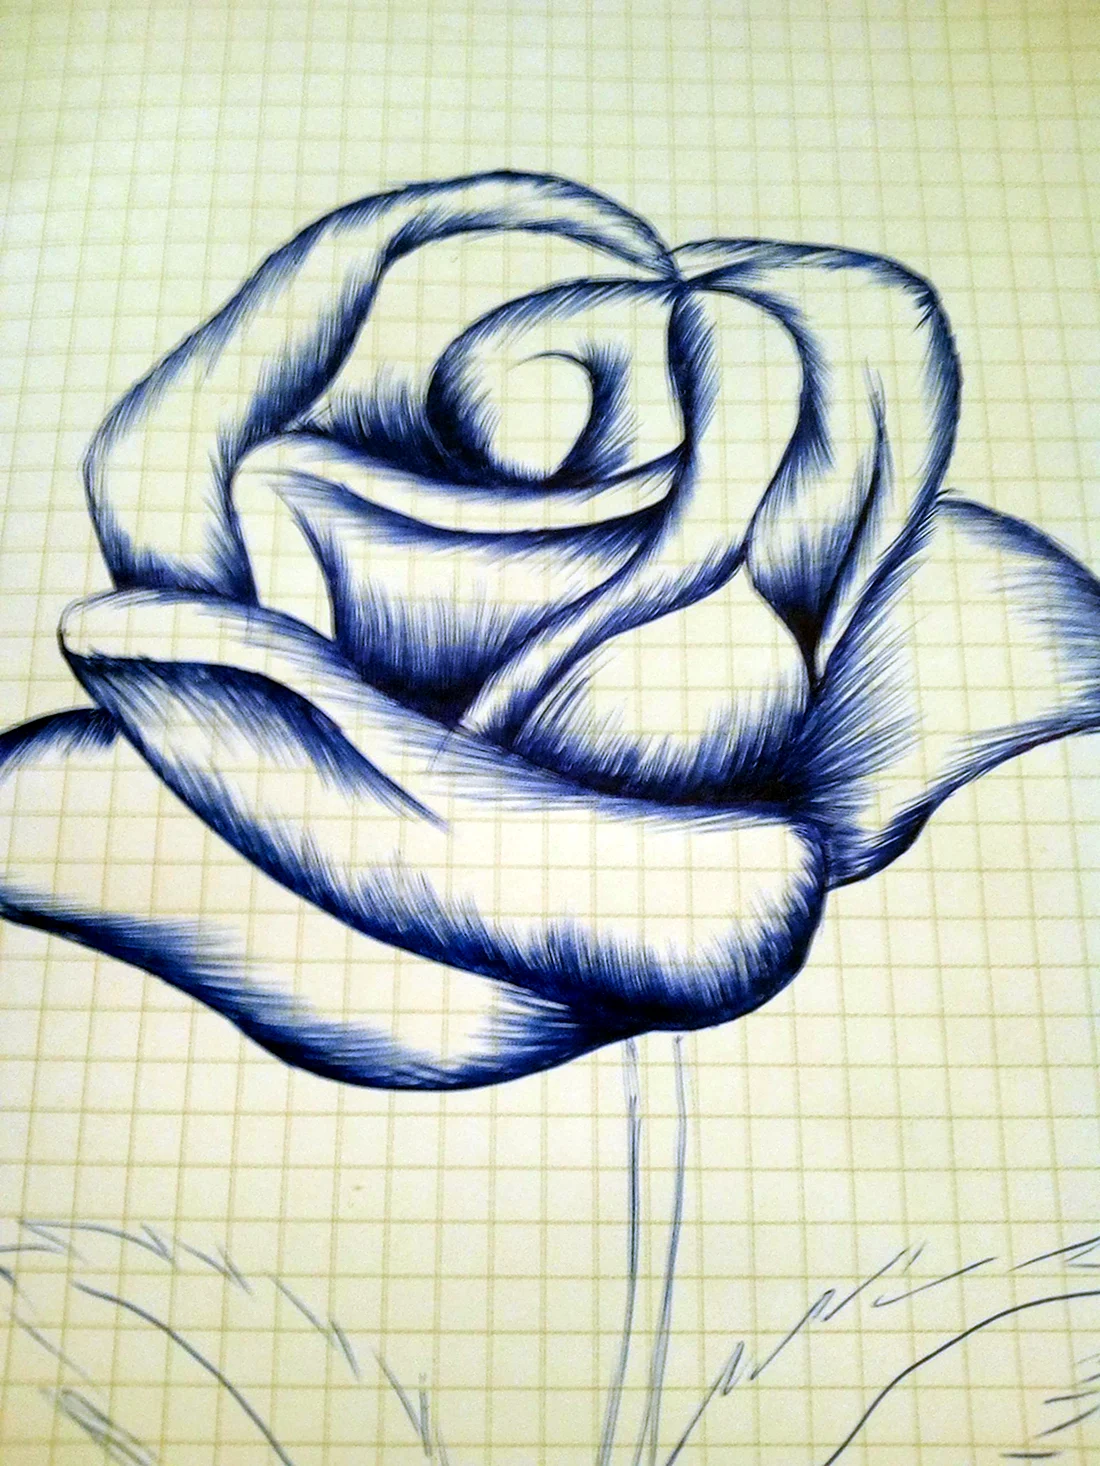 Роза рисунок простой